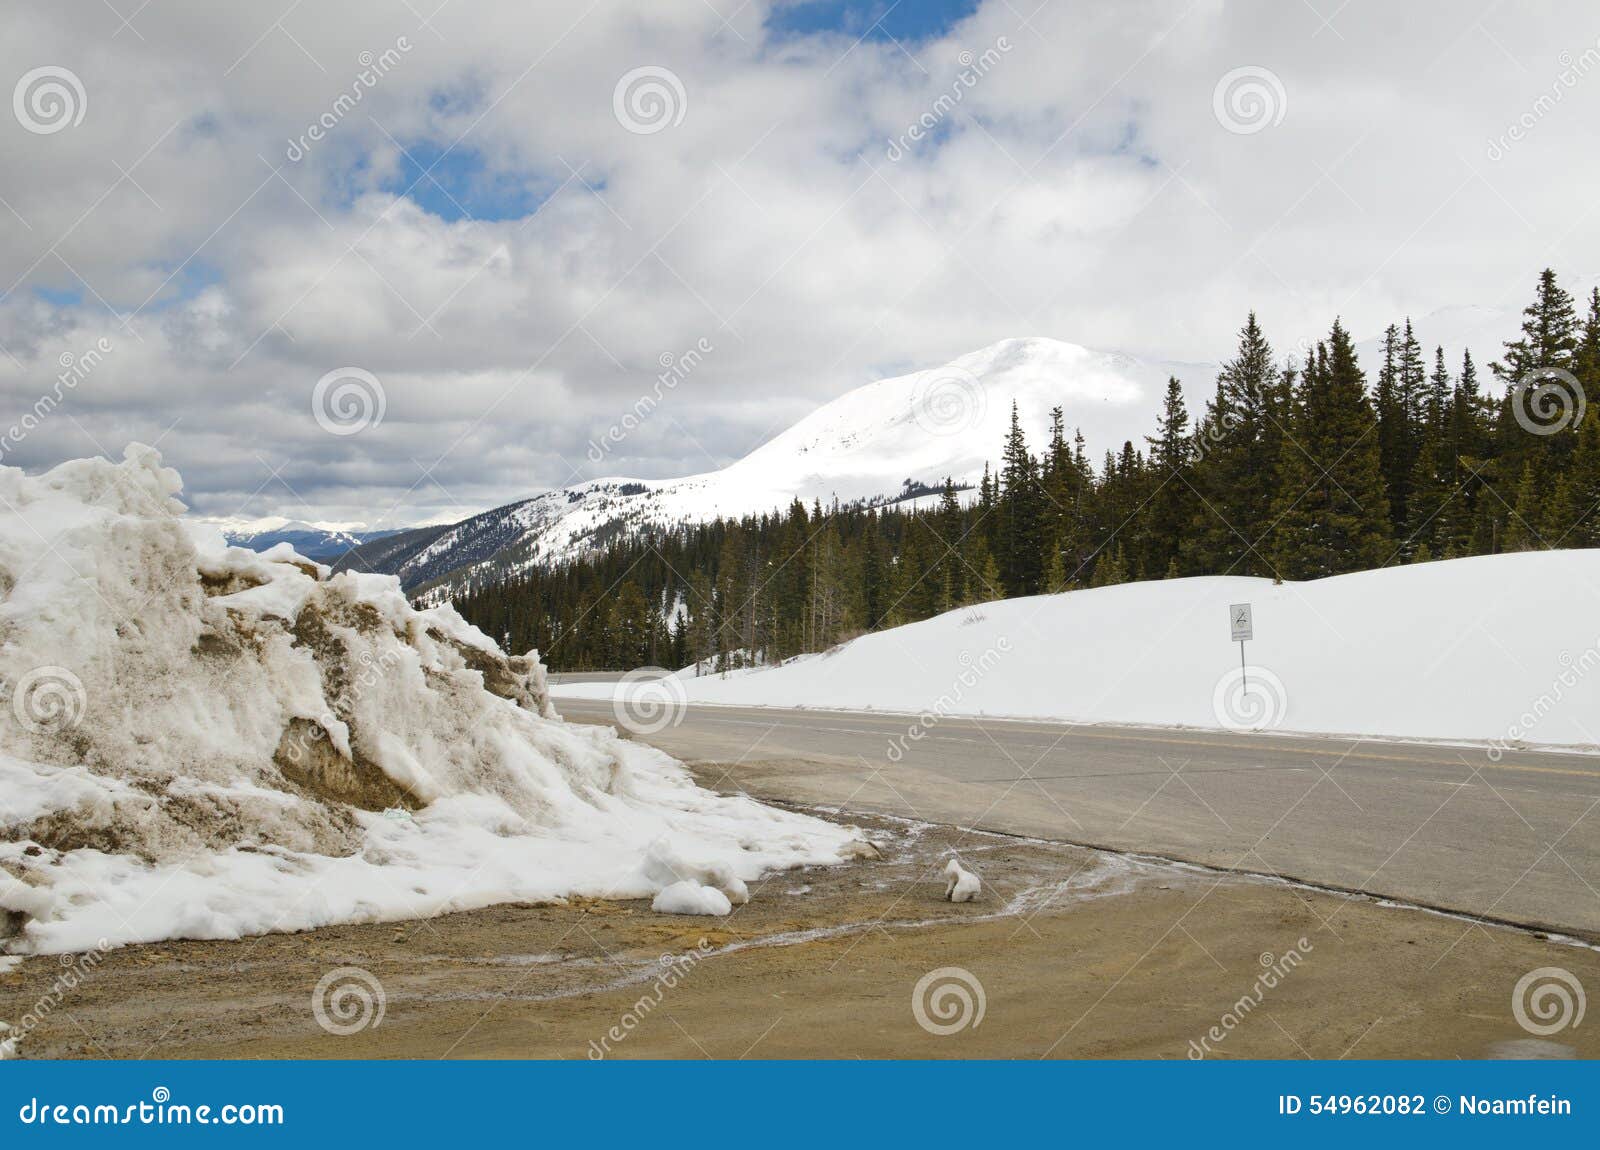 hoosier pass - snowy condition road in colorado